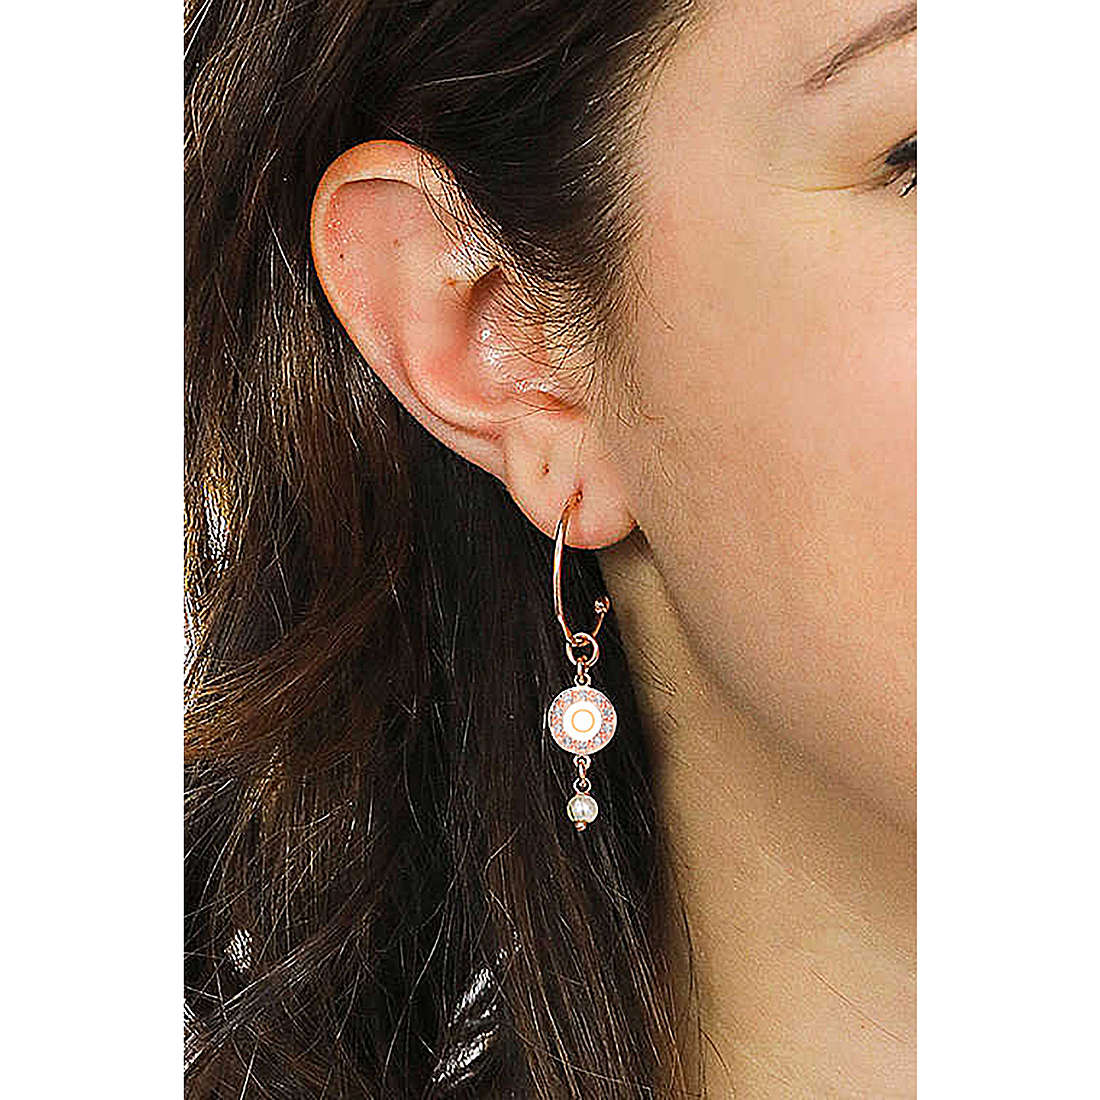 Dvccio earrings Kelly woman OTRESAGR-o wearing